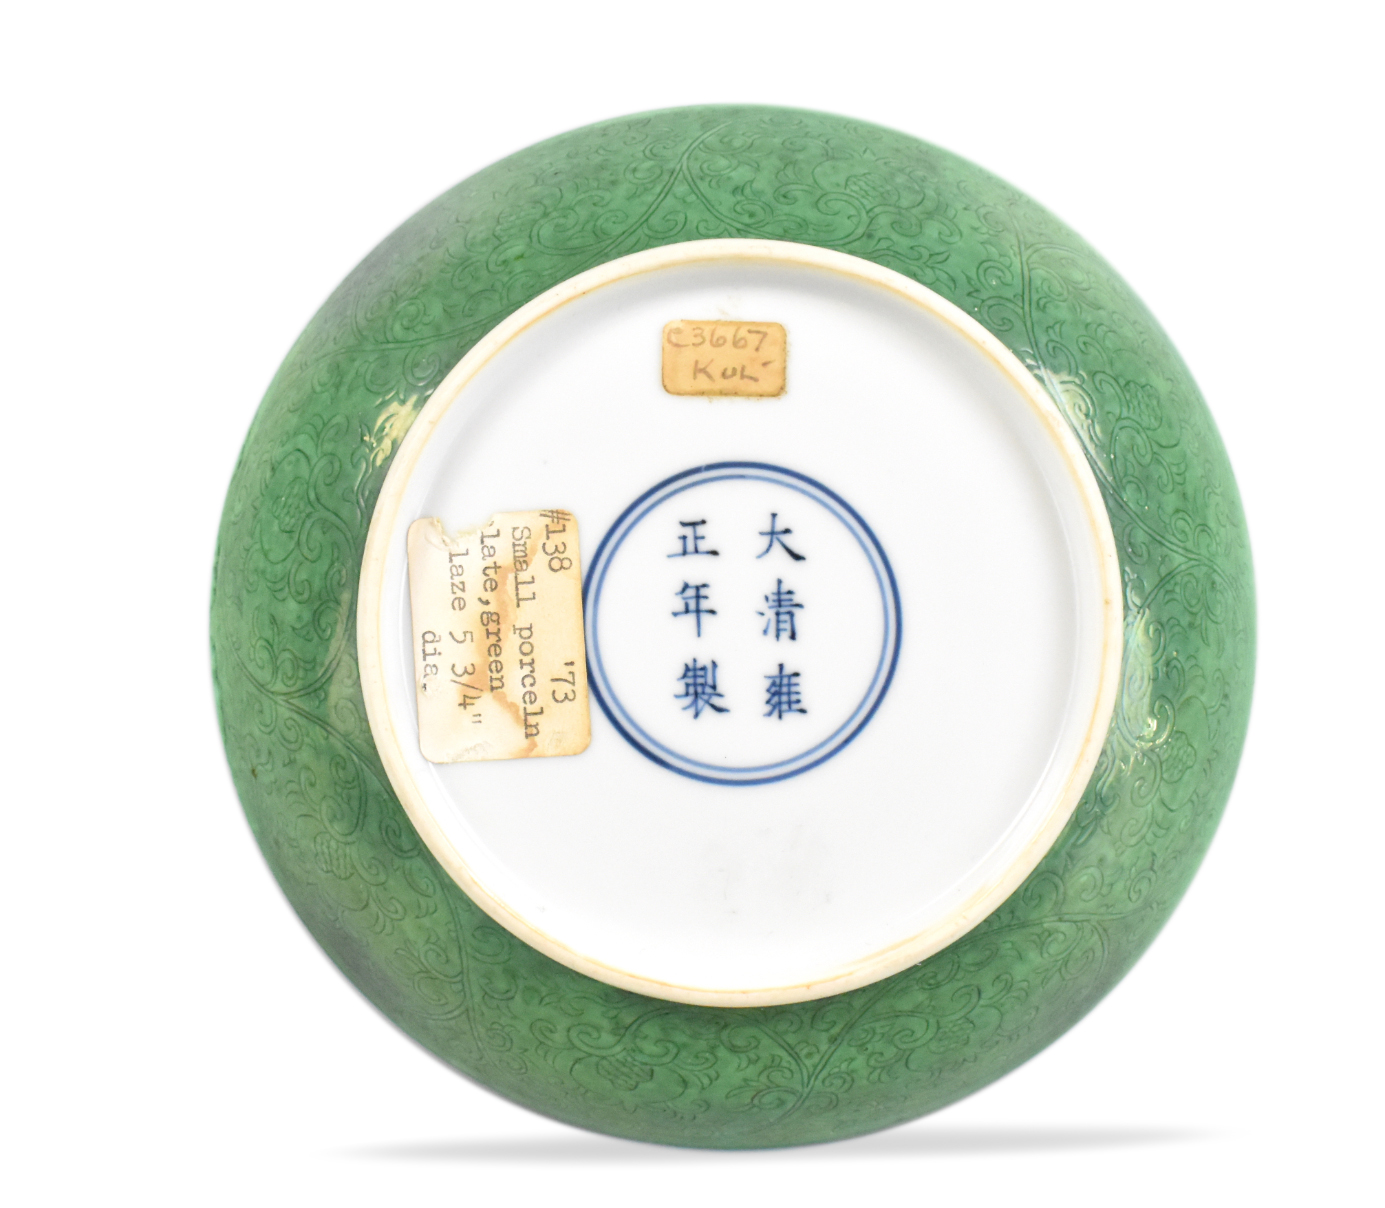 CHINESE IMPERIAL GREEN GLAZE DISH,YONGZHENG